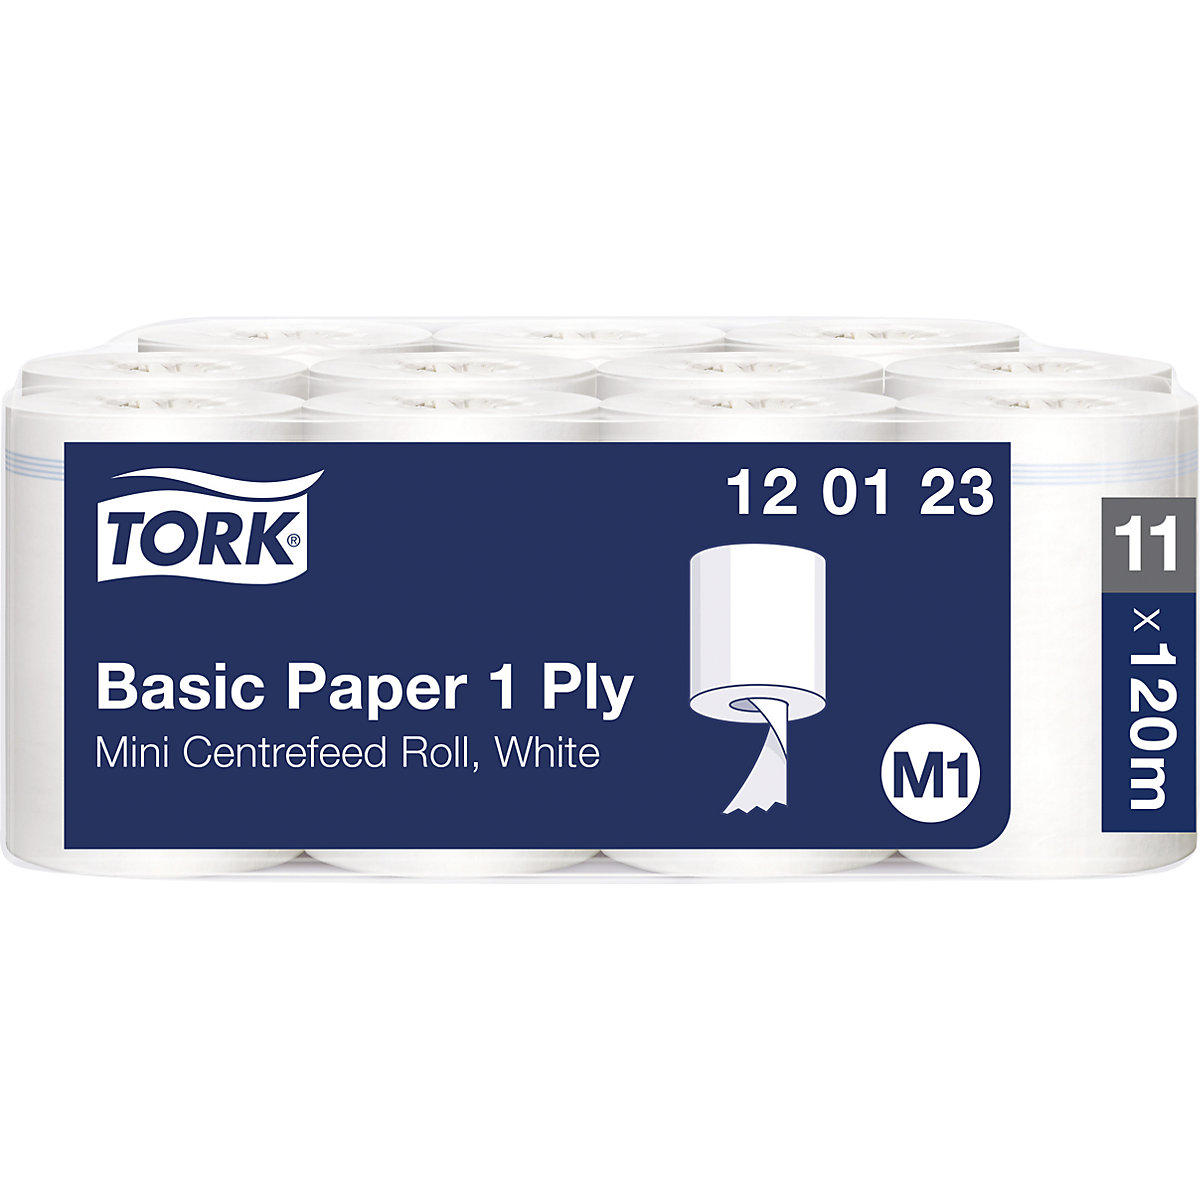 Standaard papieren poetsdoekjes met binnenafrolling – TORK (Productafbeelding 2)-1